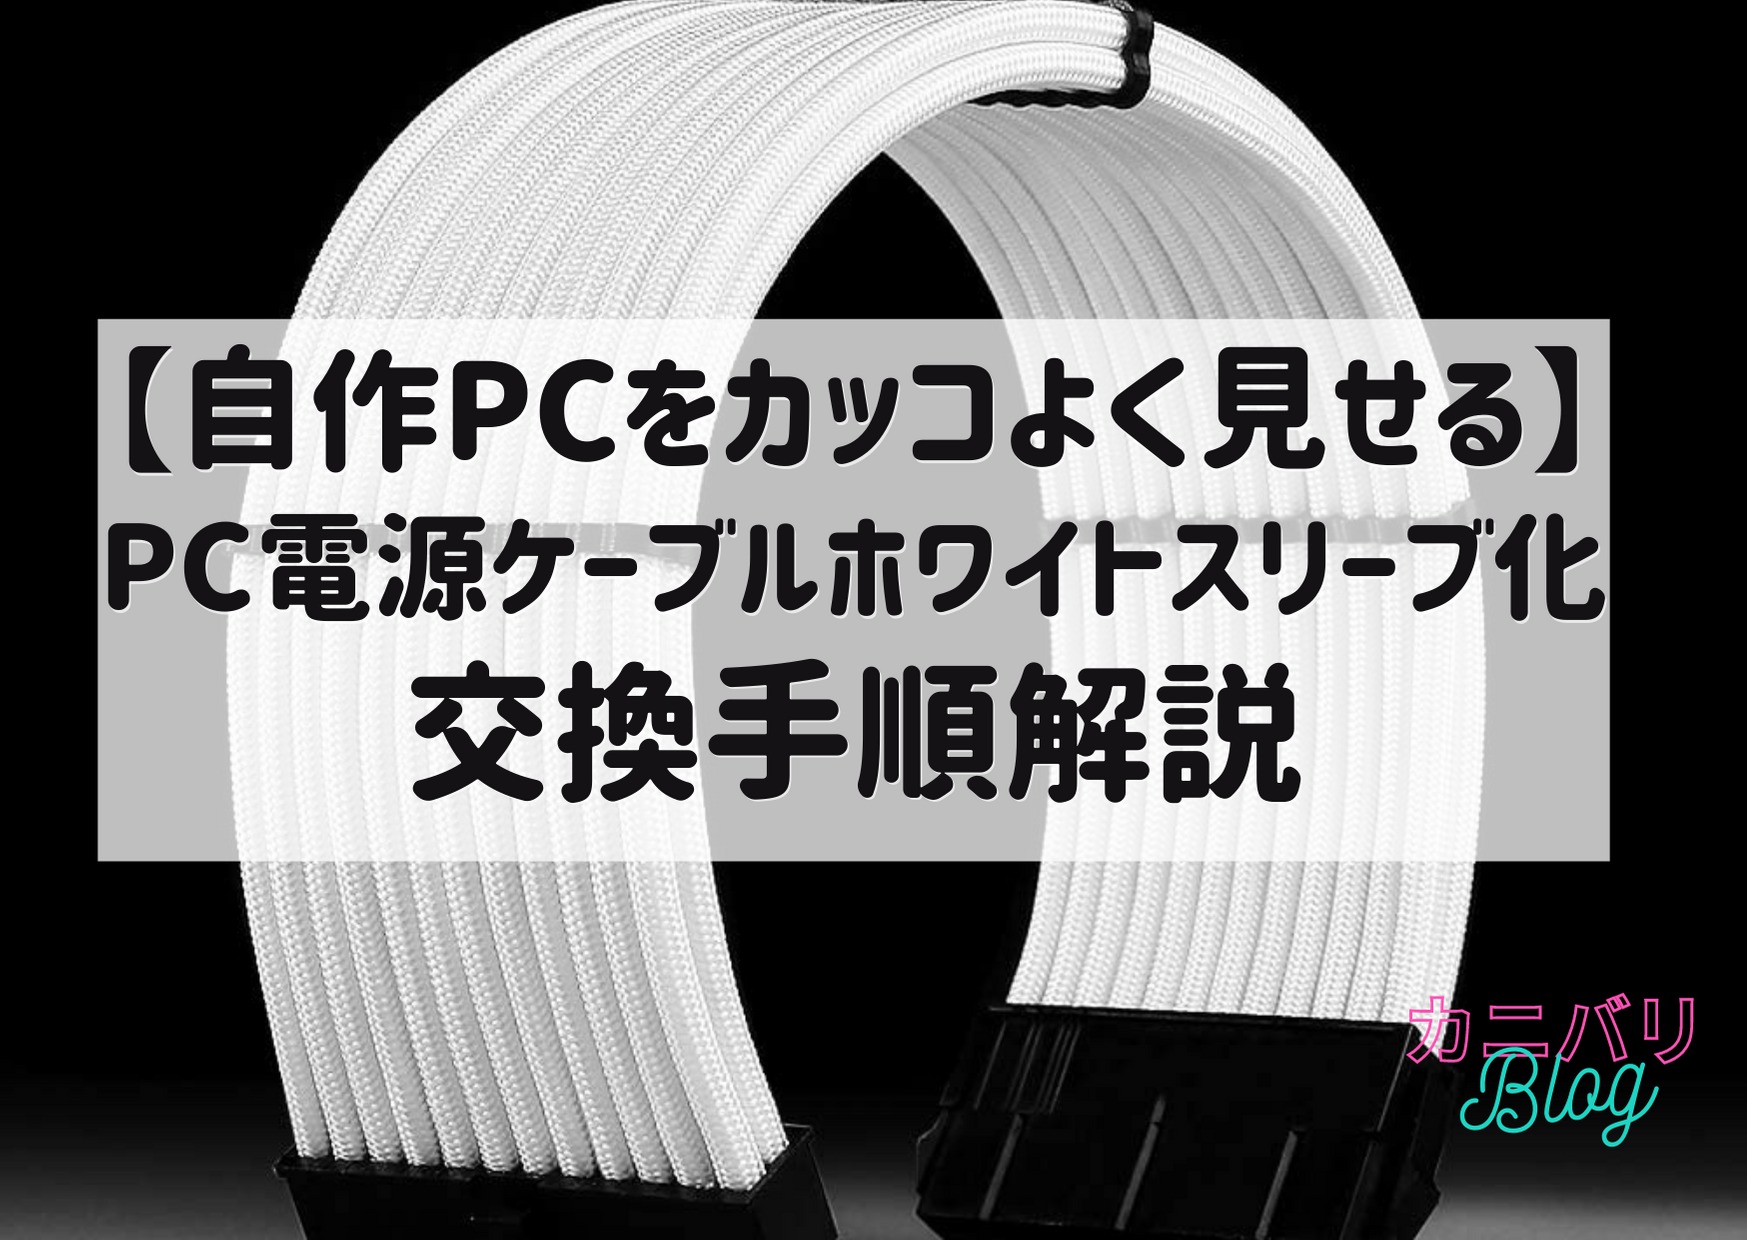 超格安一点 スリーブ付きケーブル 電源用PSU延長ケーブルキット コーム付きファイバー編組ATX EPS PCI-Eケーブル 30CM 白 